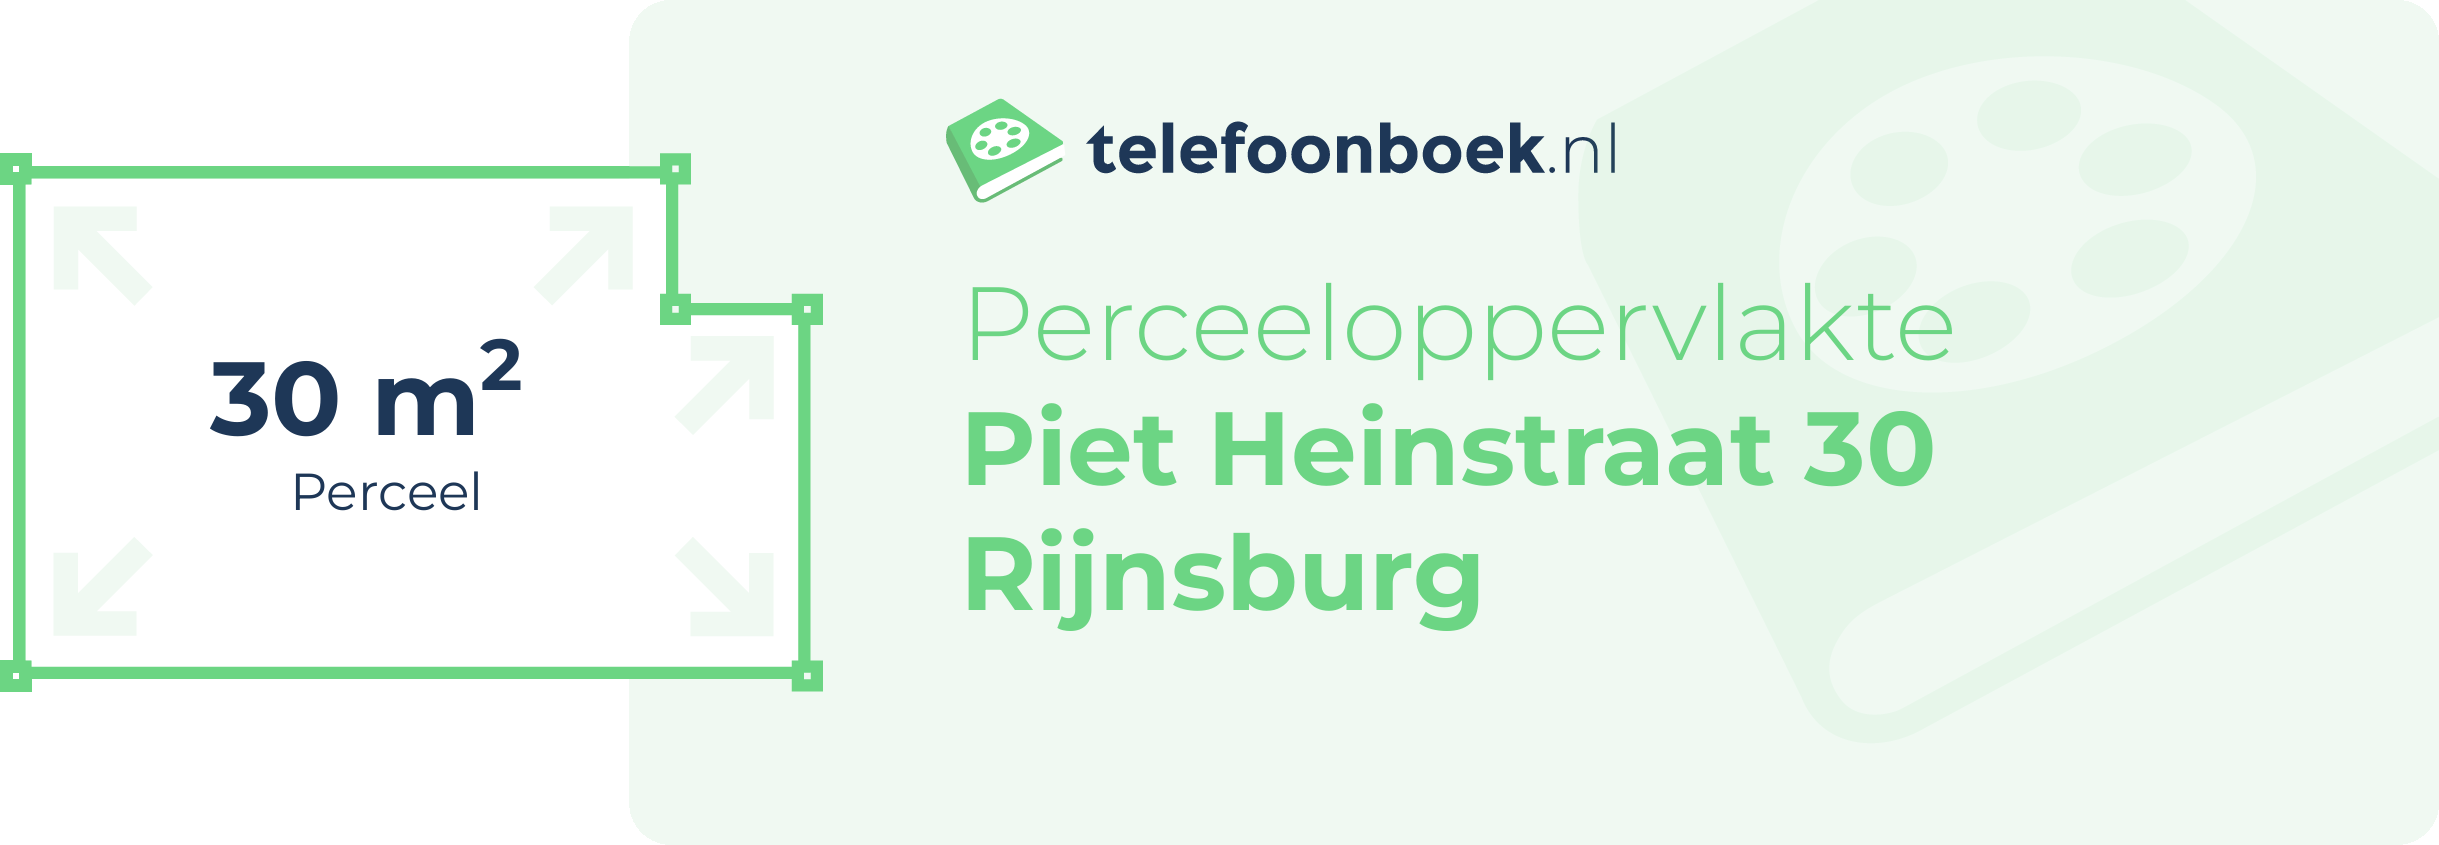 Perceeloppervlakte Piet Heinstraat 30 Rijnsburg